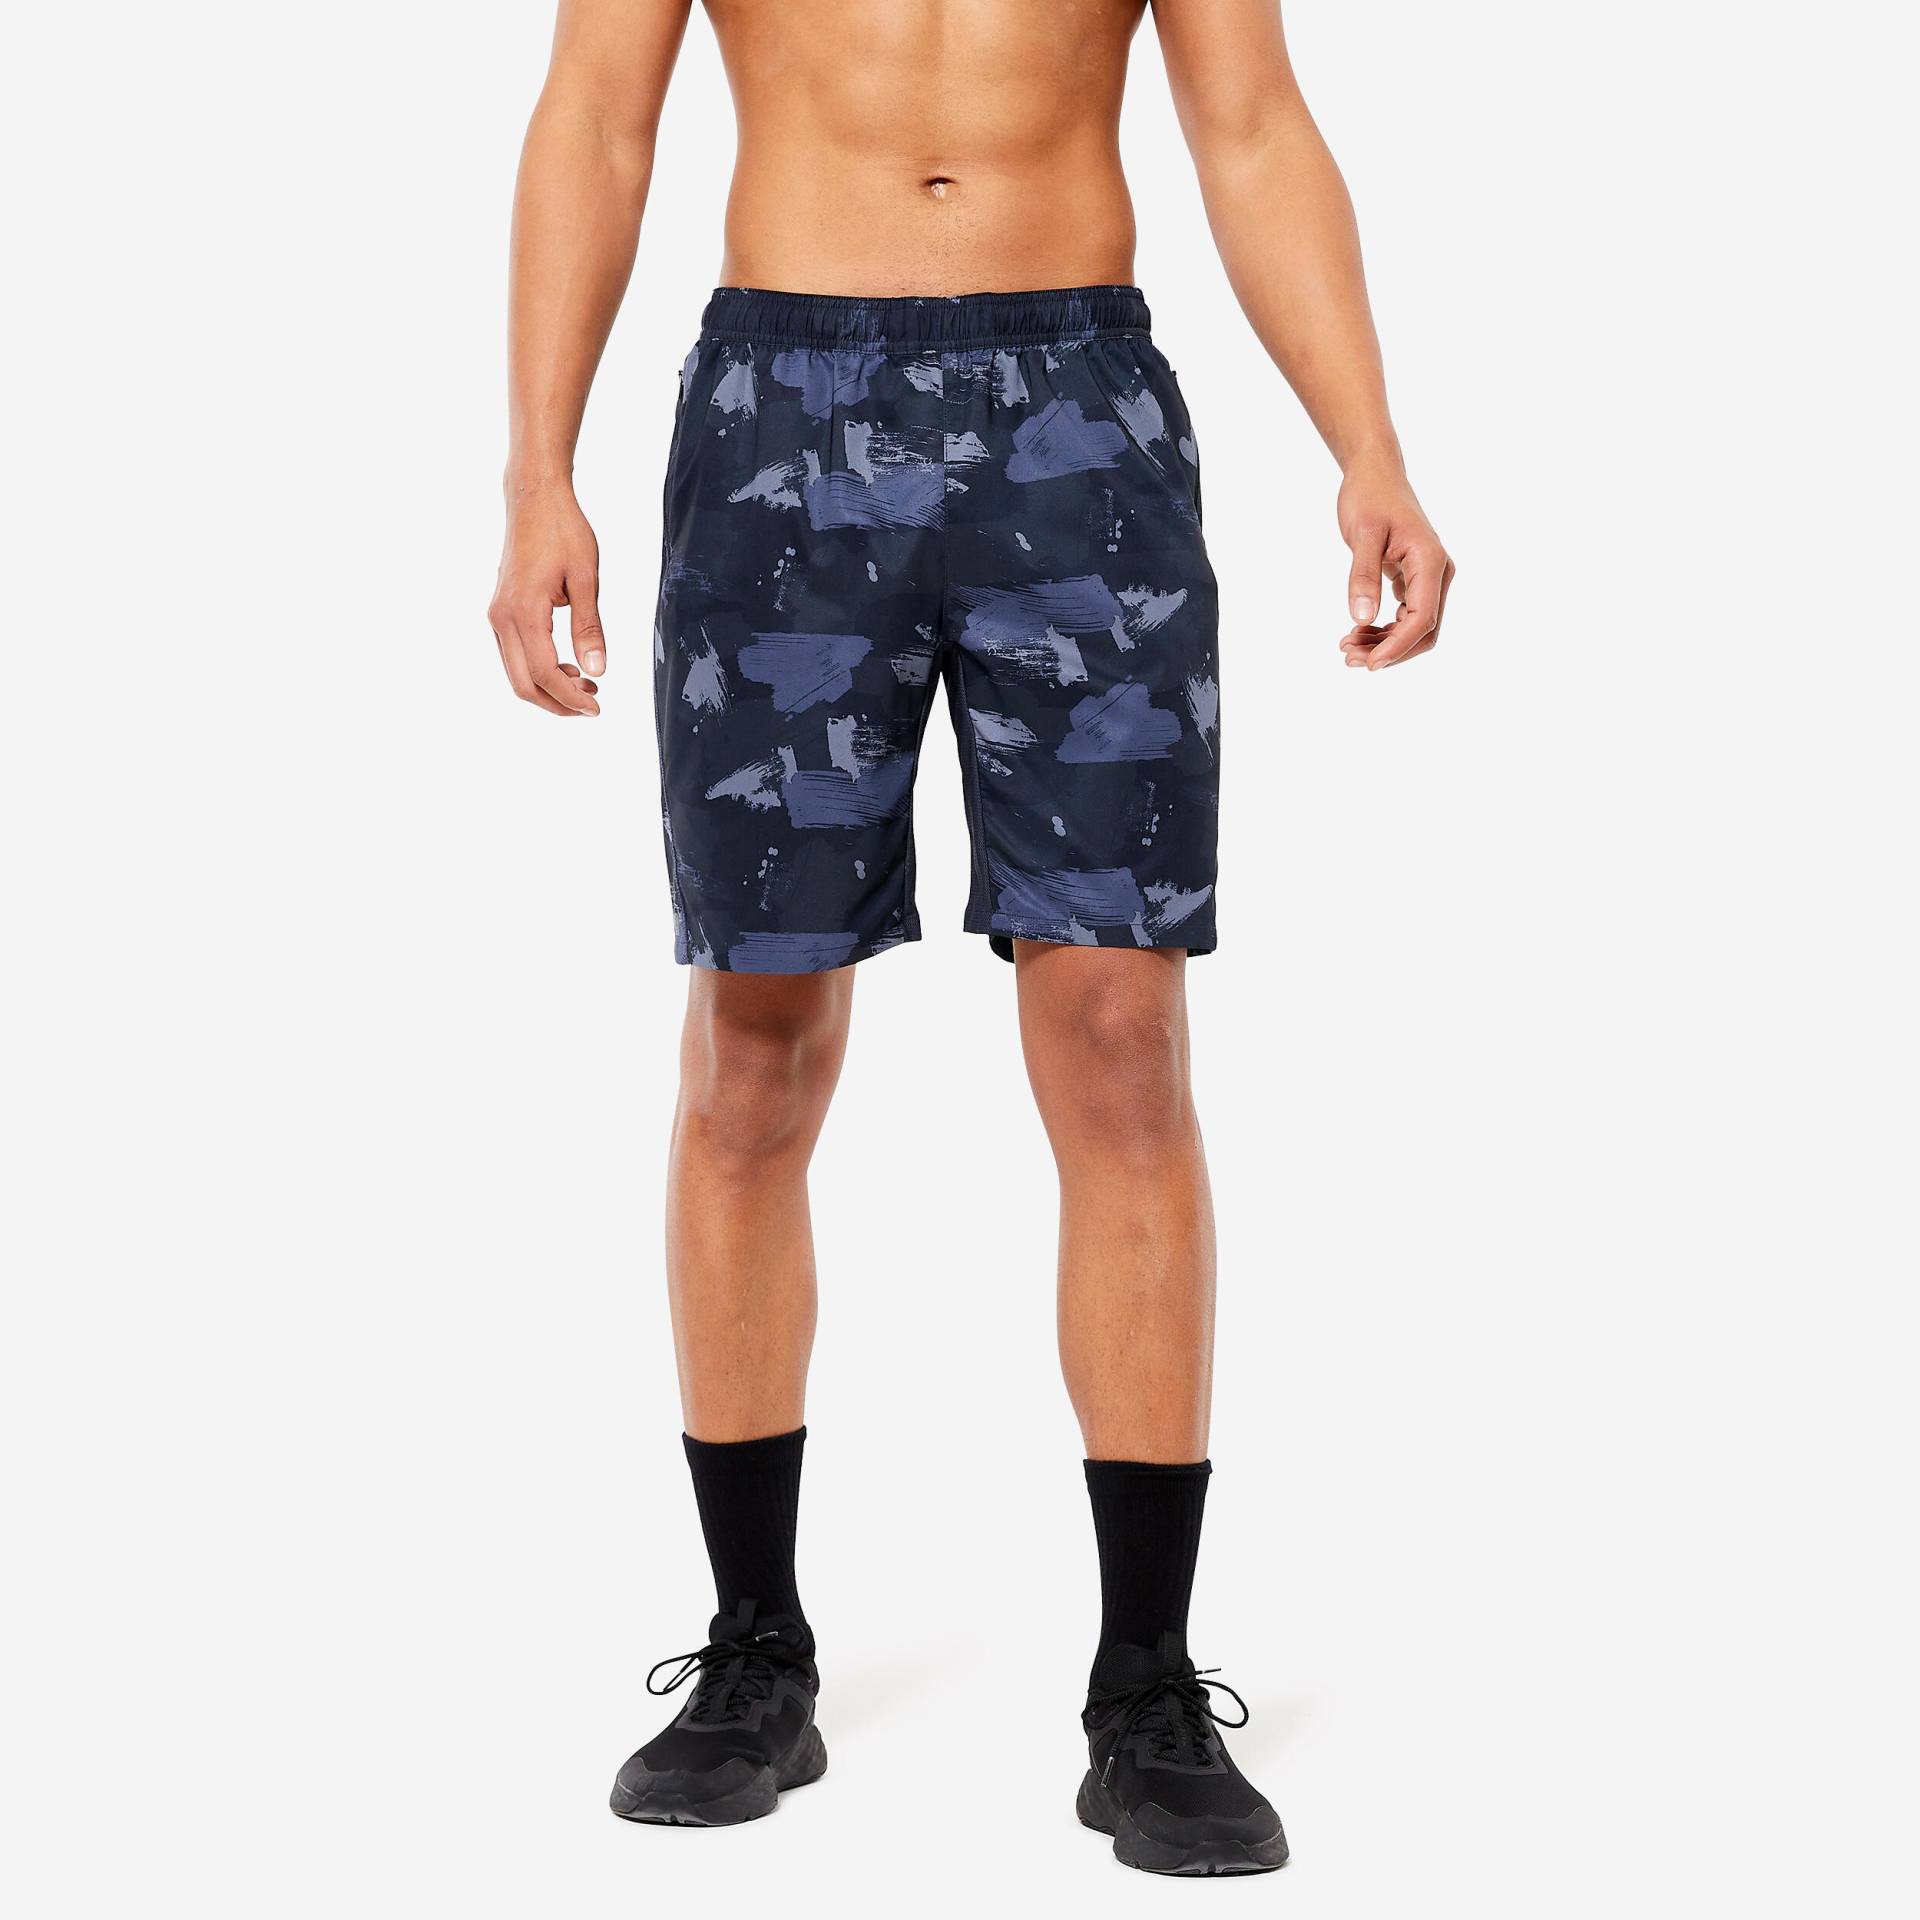 Shorts Fitness Herren RV-Tasche - 120 blau/camouflage von Domyos